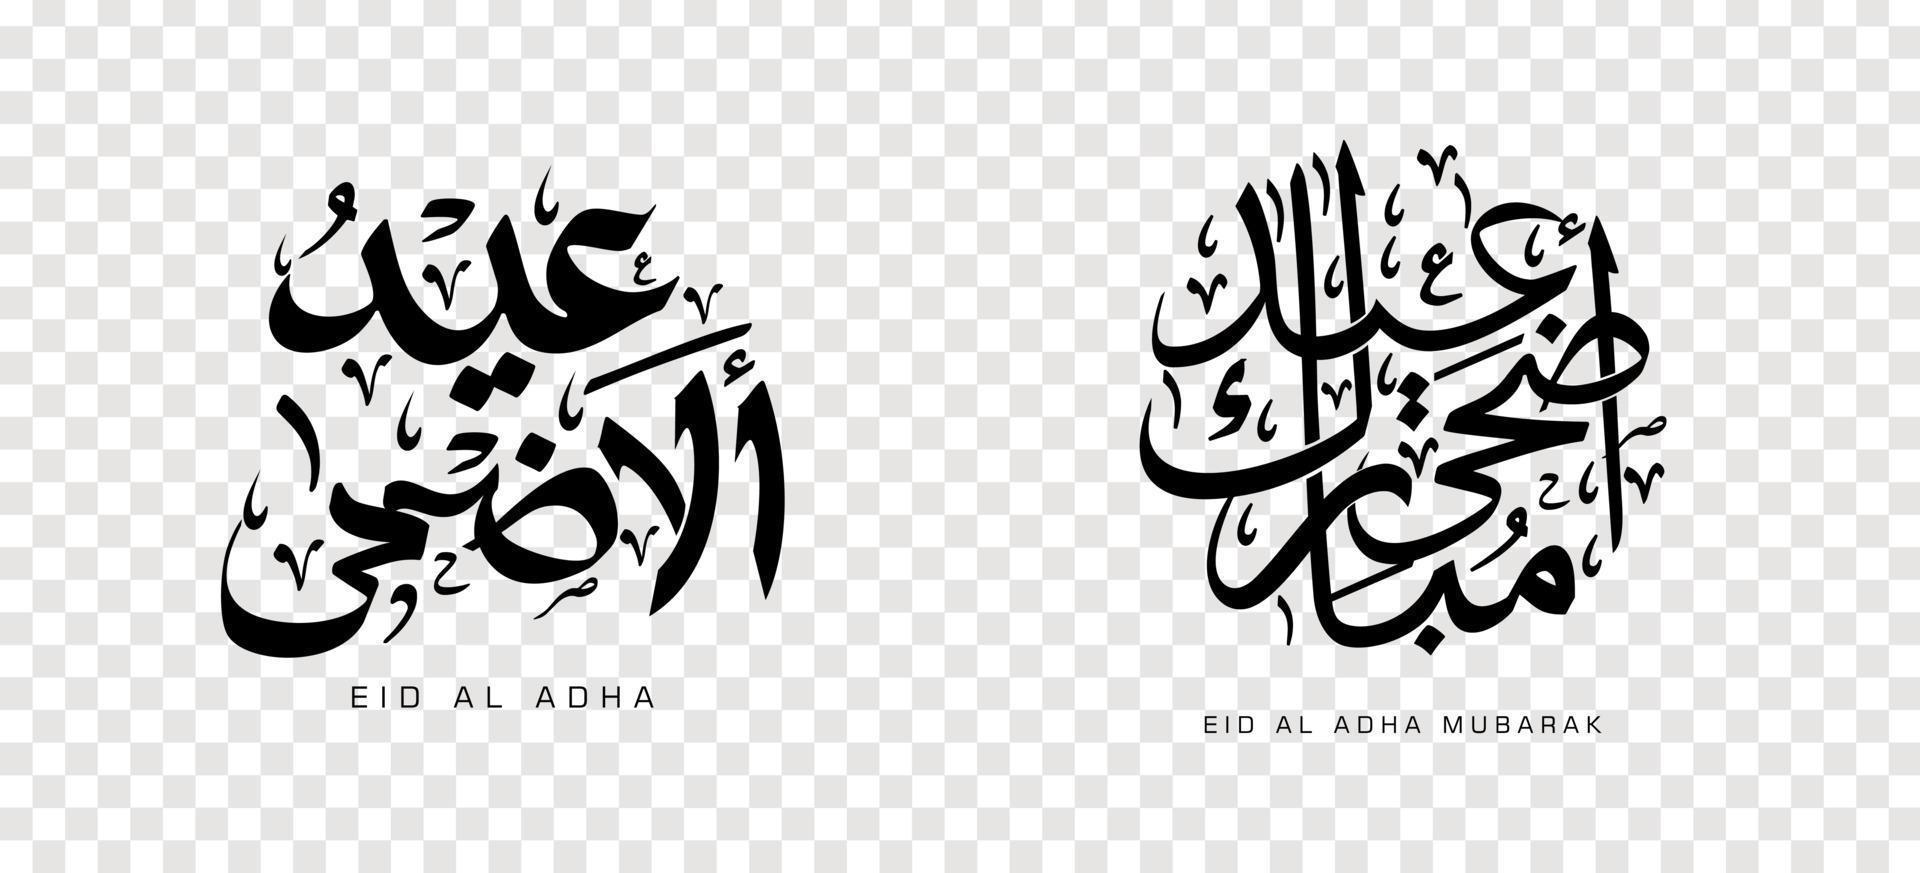 uppsättning av eid adha mubarak i arabisk kalligrafi, designelement på en transparent bakgrund. vektor illustration